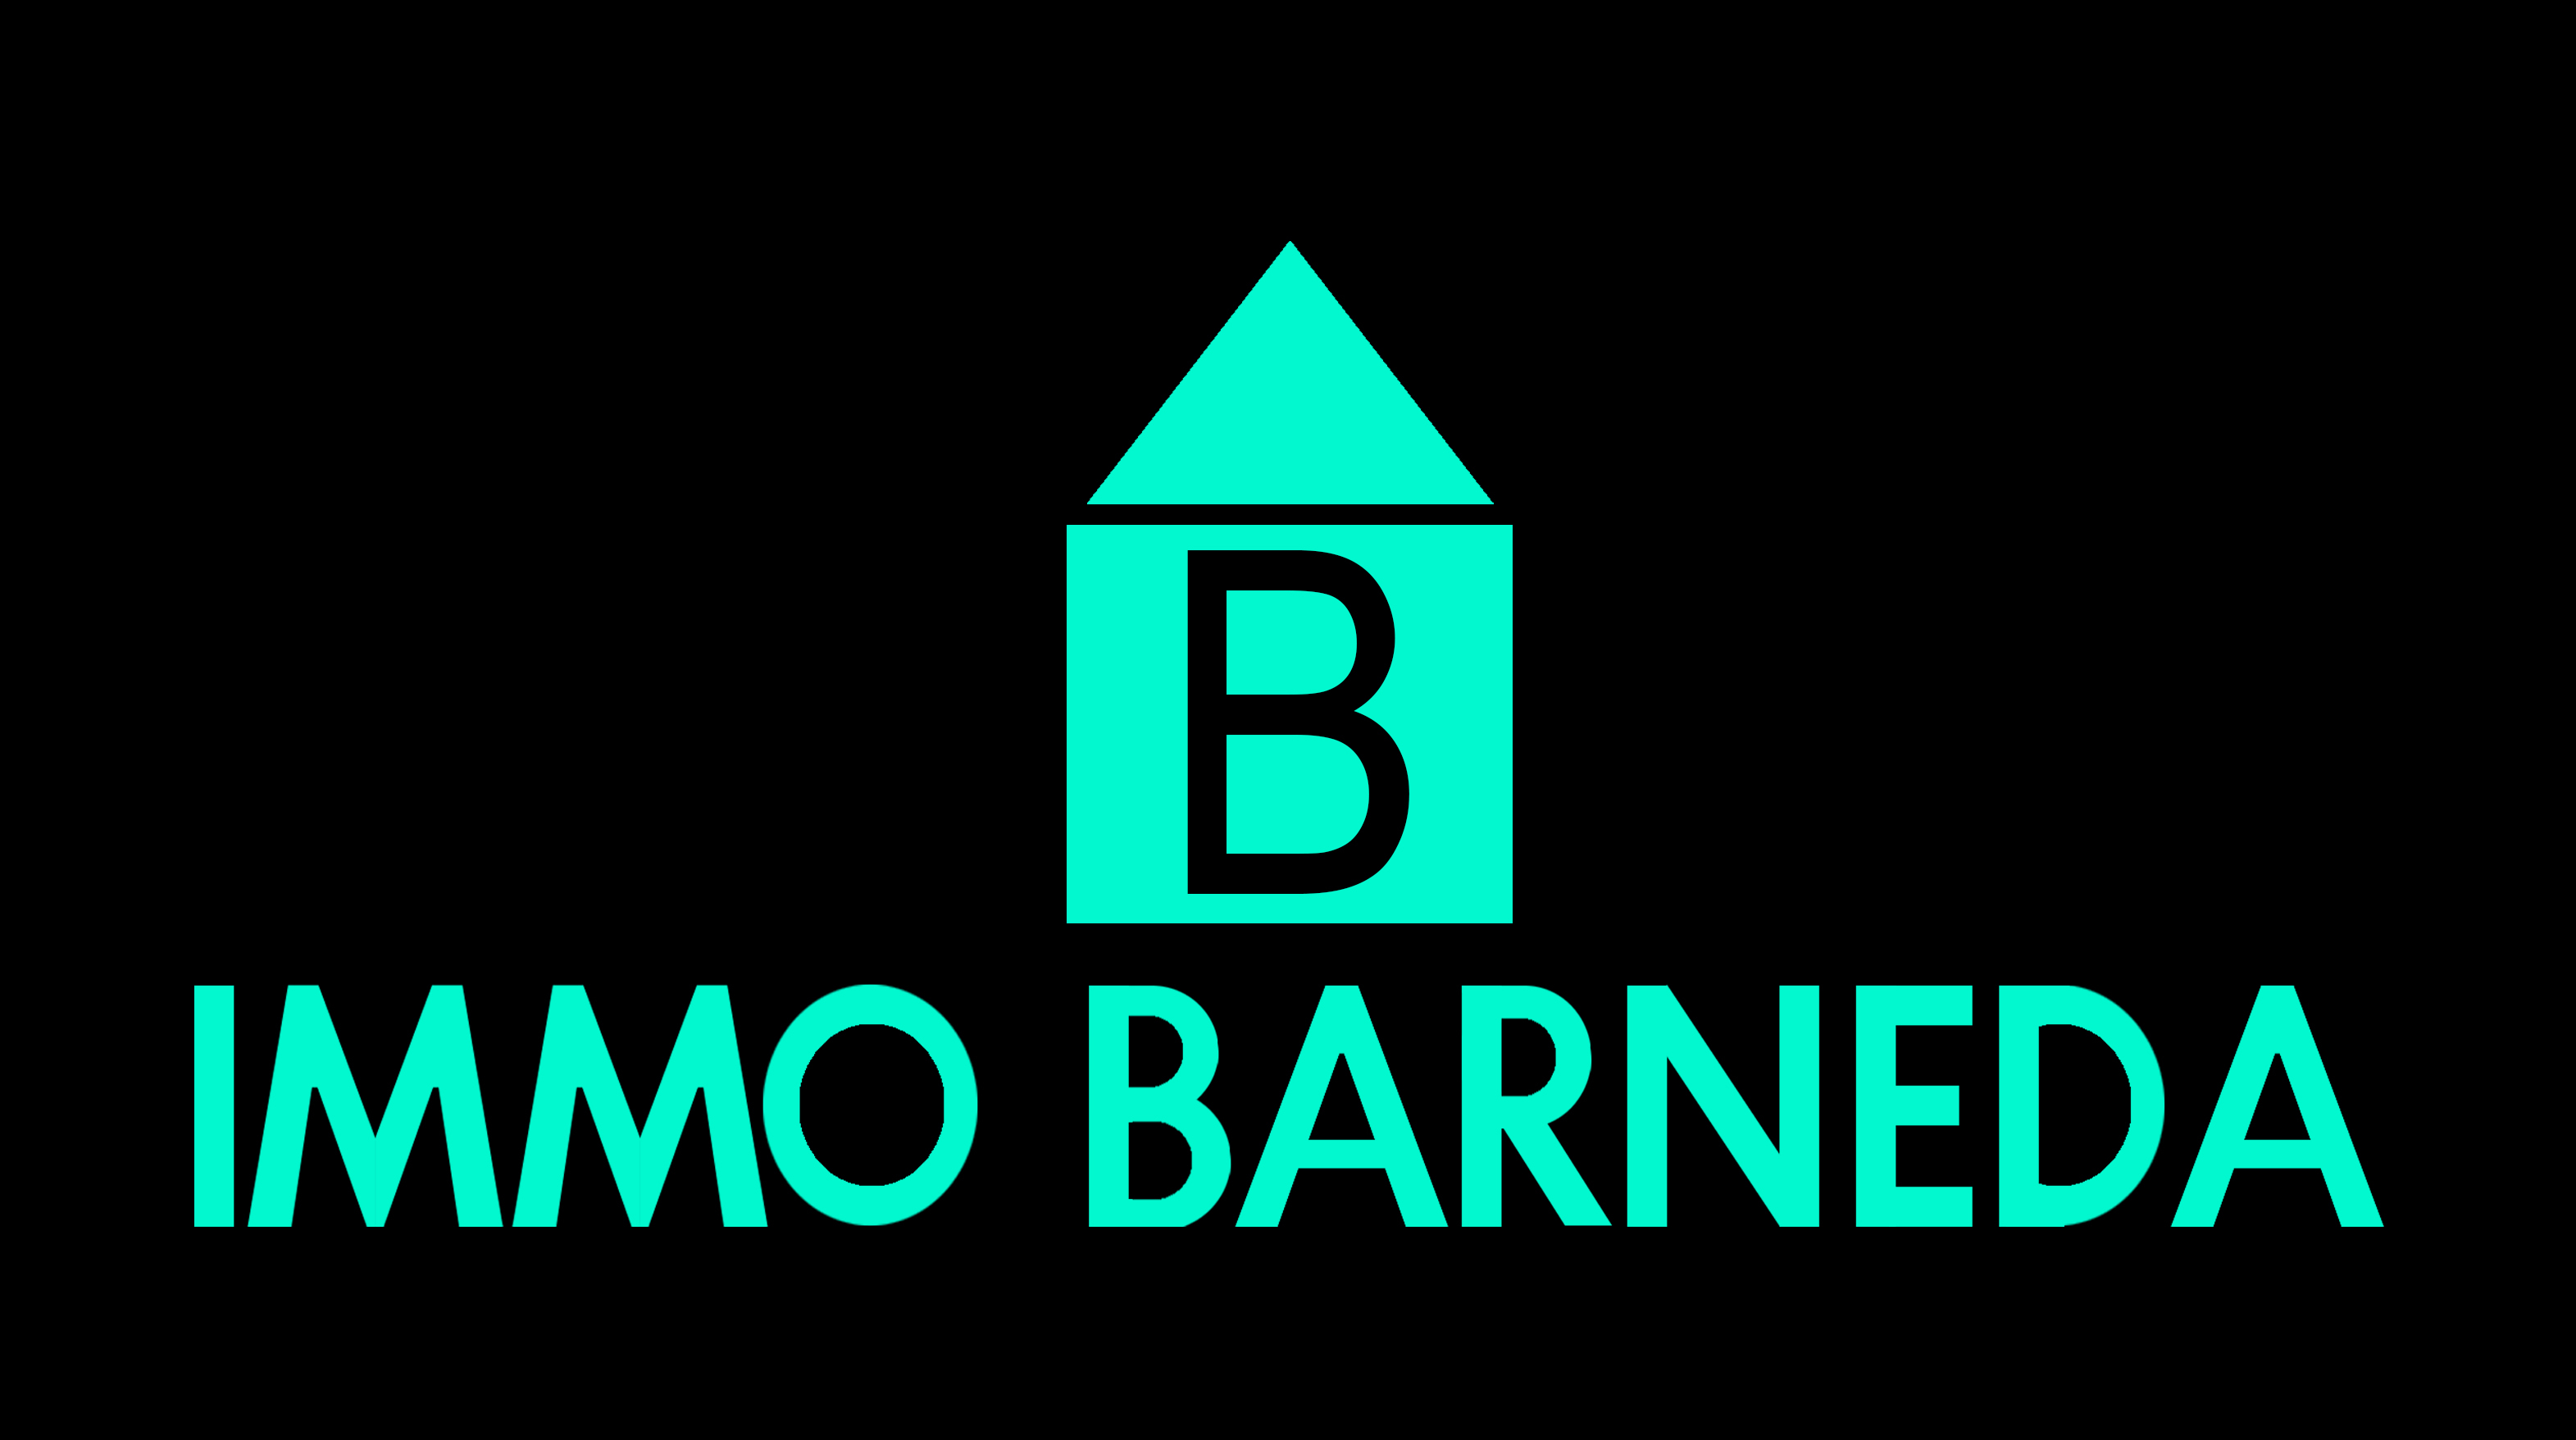 Inmobiliaria Immo Barneda - Inmobiliaria Asociada Costa Brava